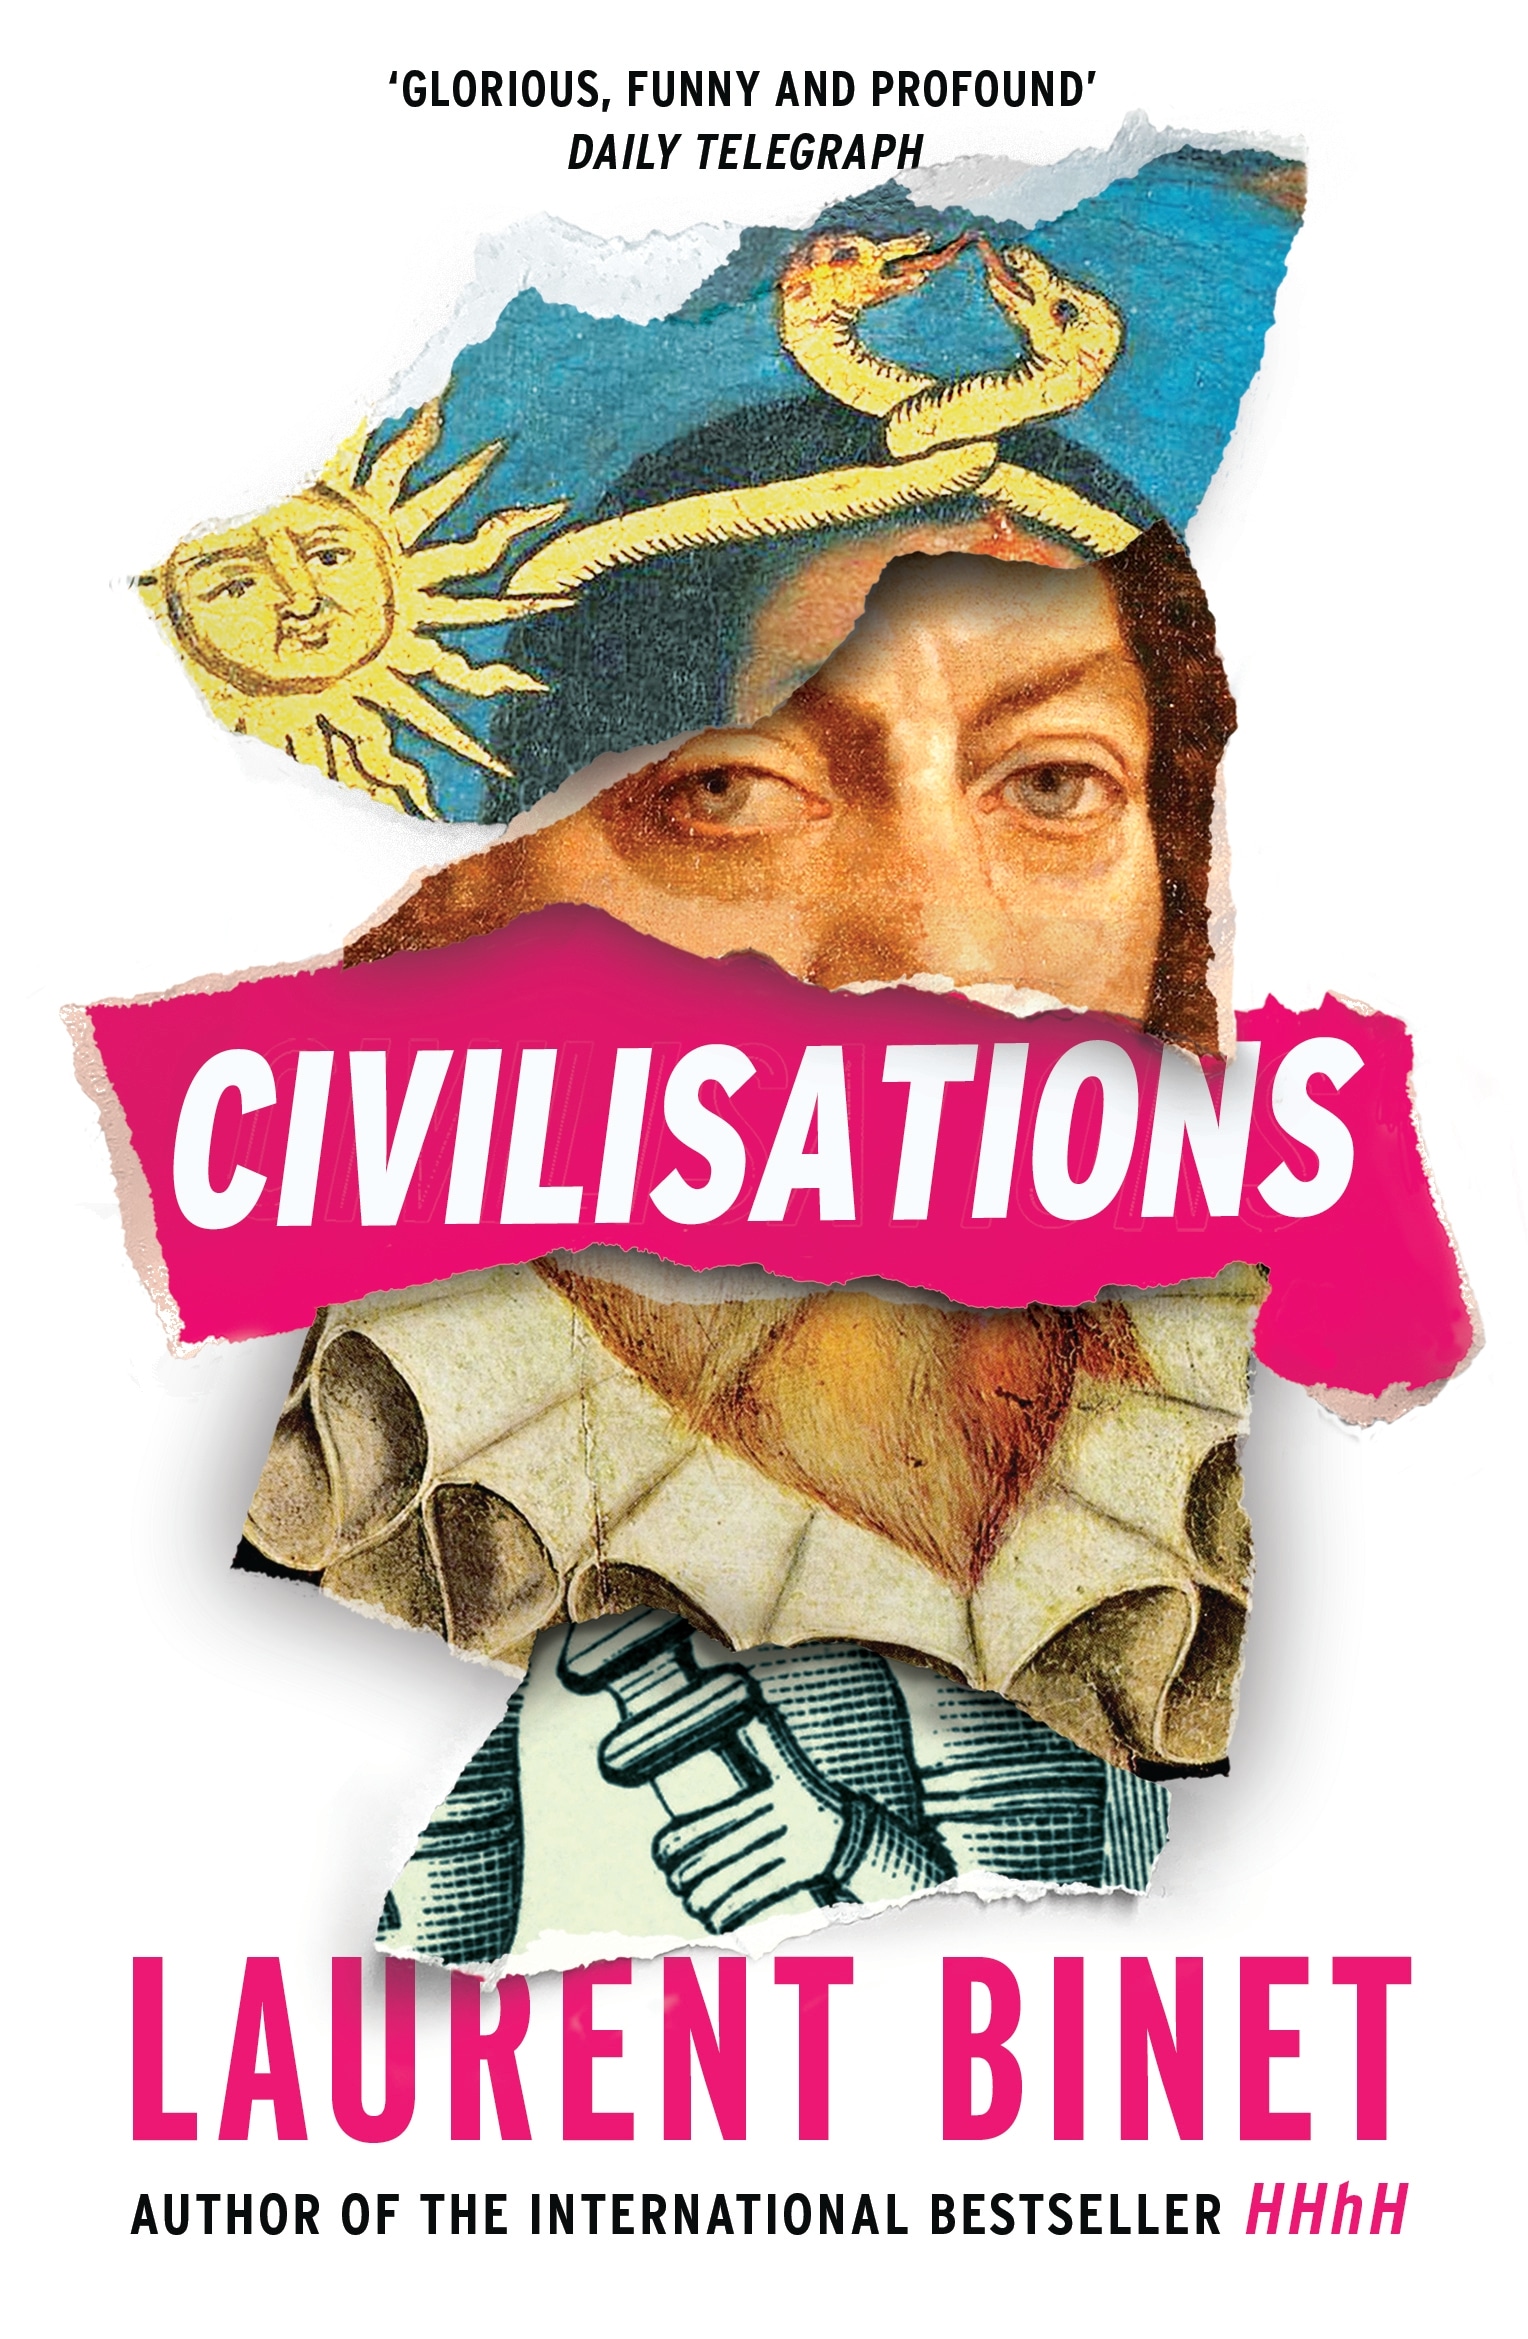 Book “Civilisations” by Laurent Binet — April 14, 2022